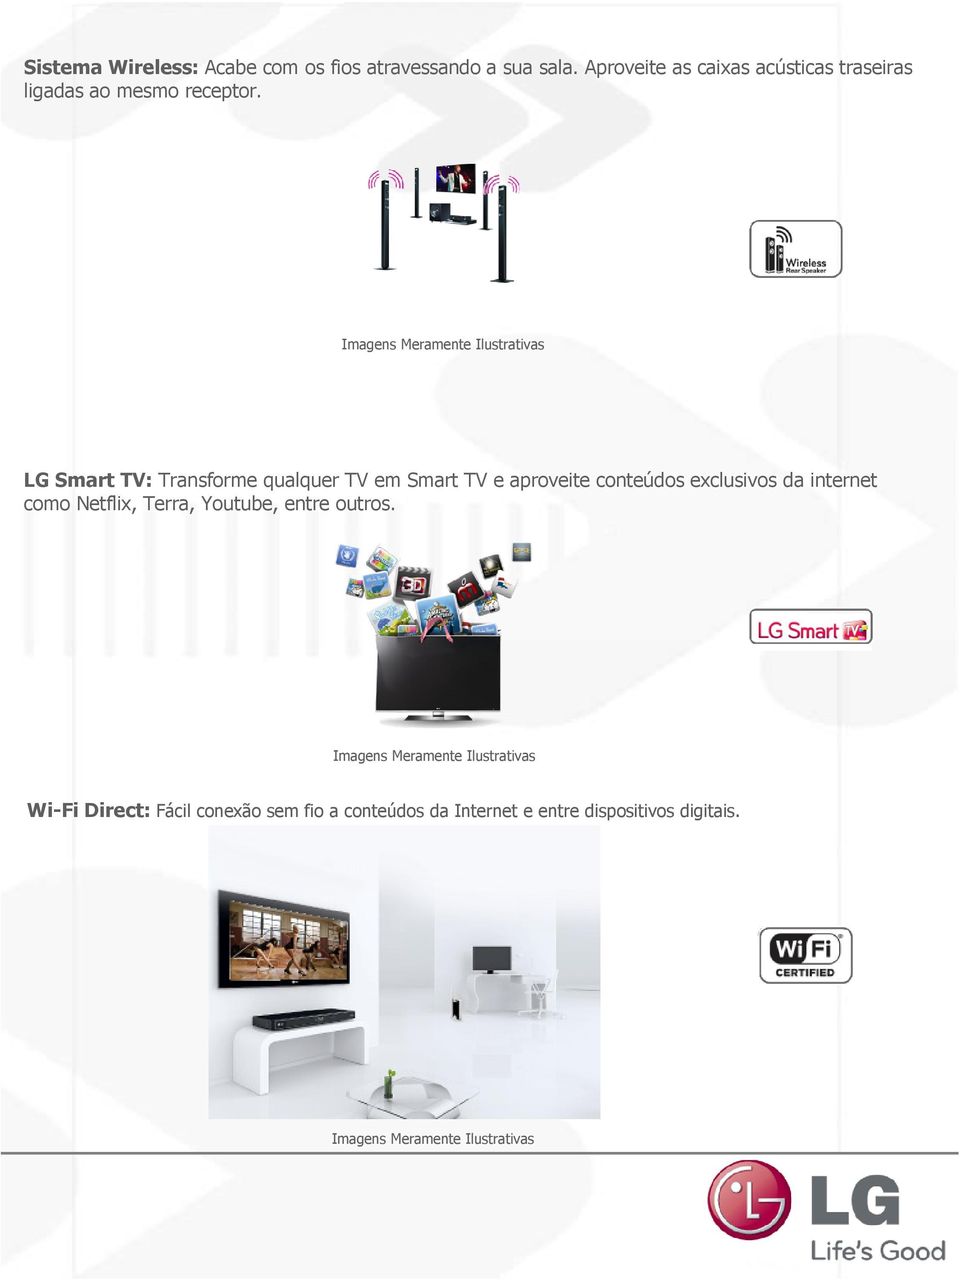 LG Smart TV: Transforme qualquer TV em Smart TV e aproveite conteúdos exclusivos da